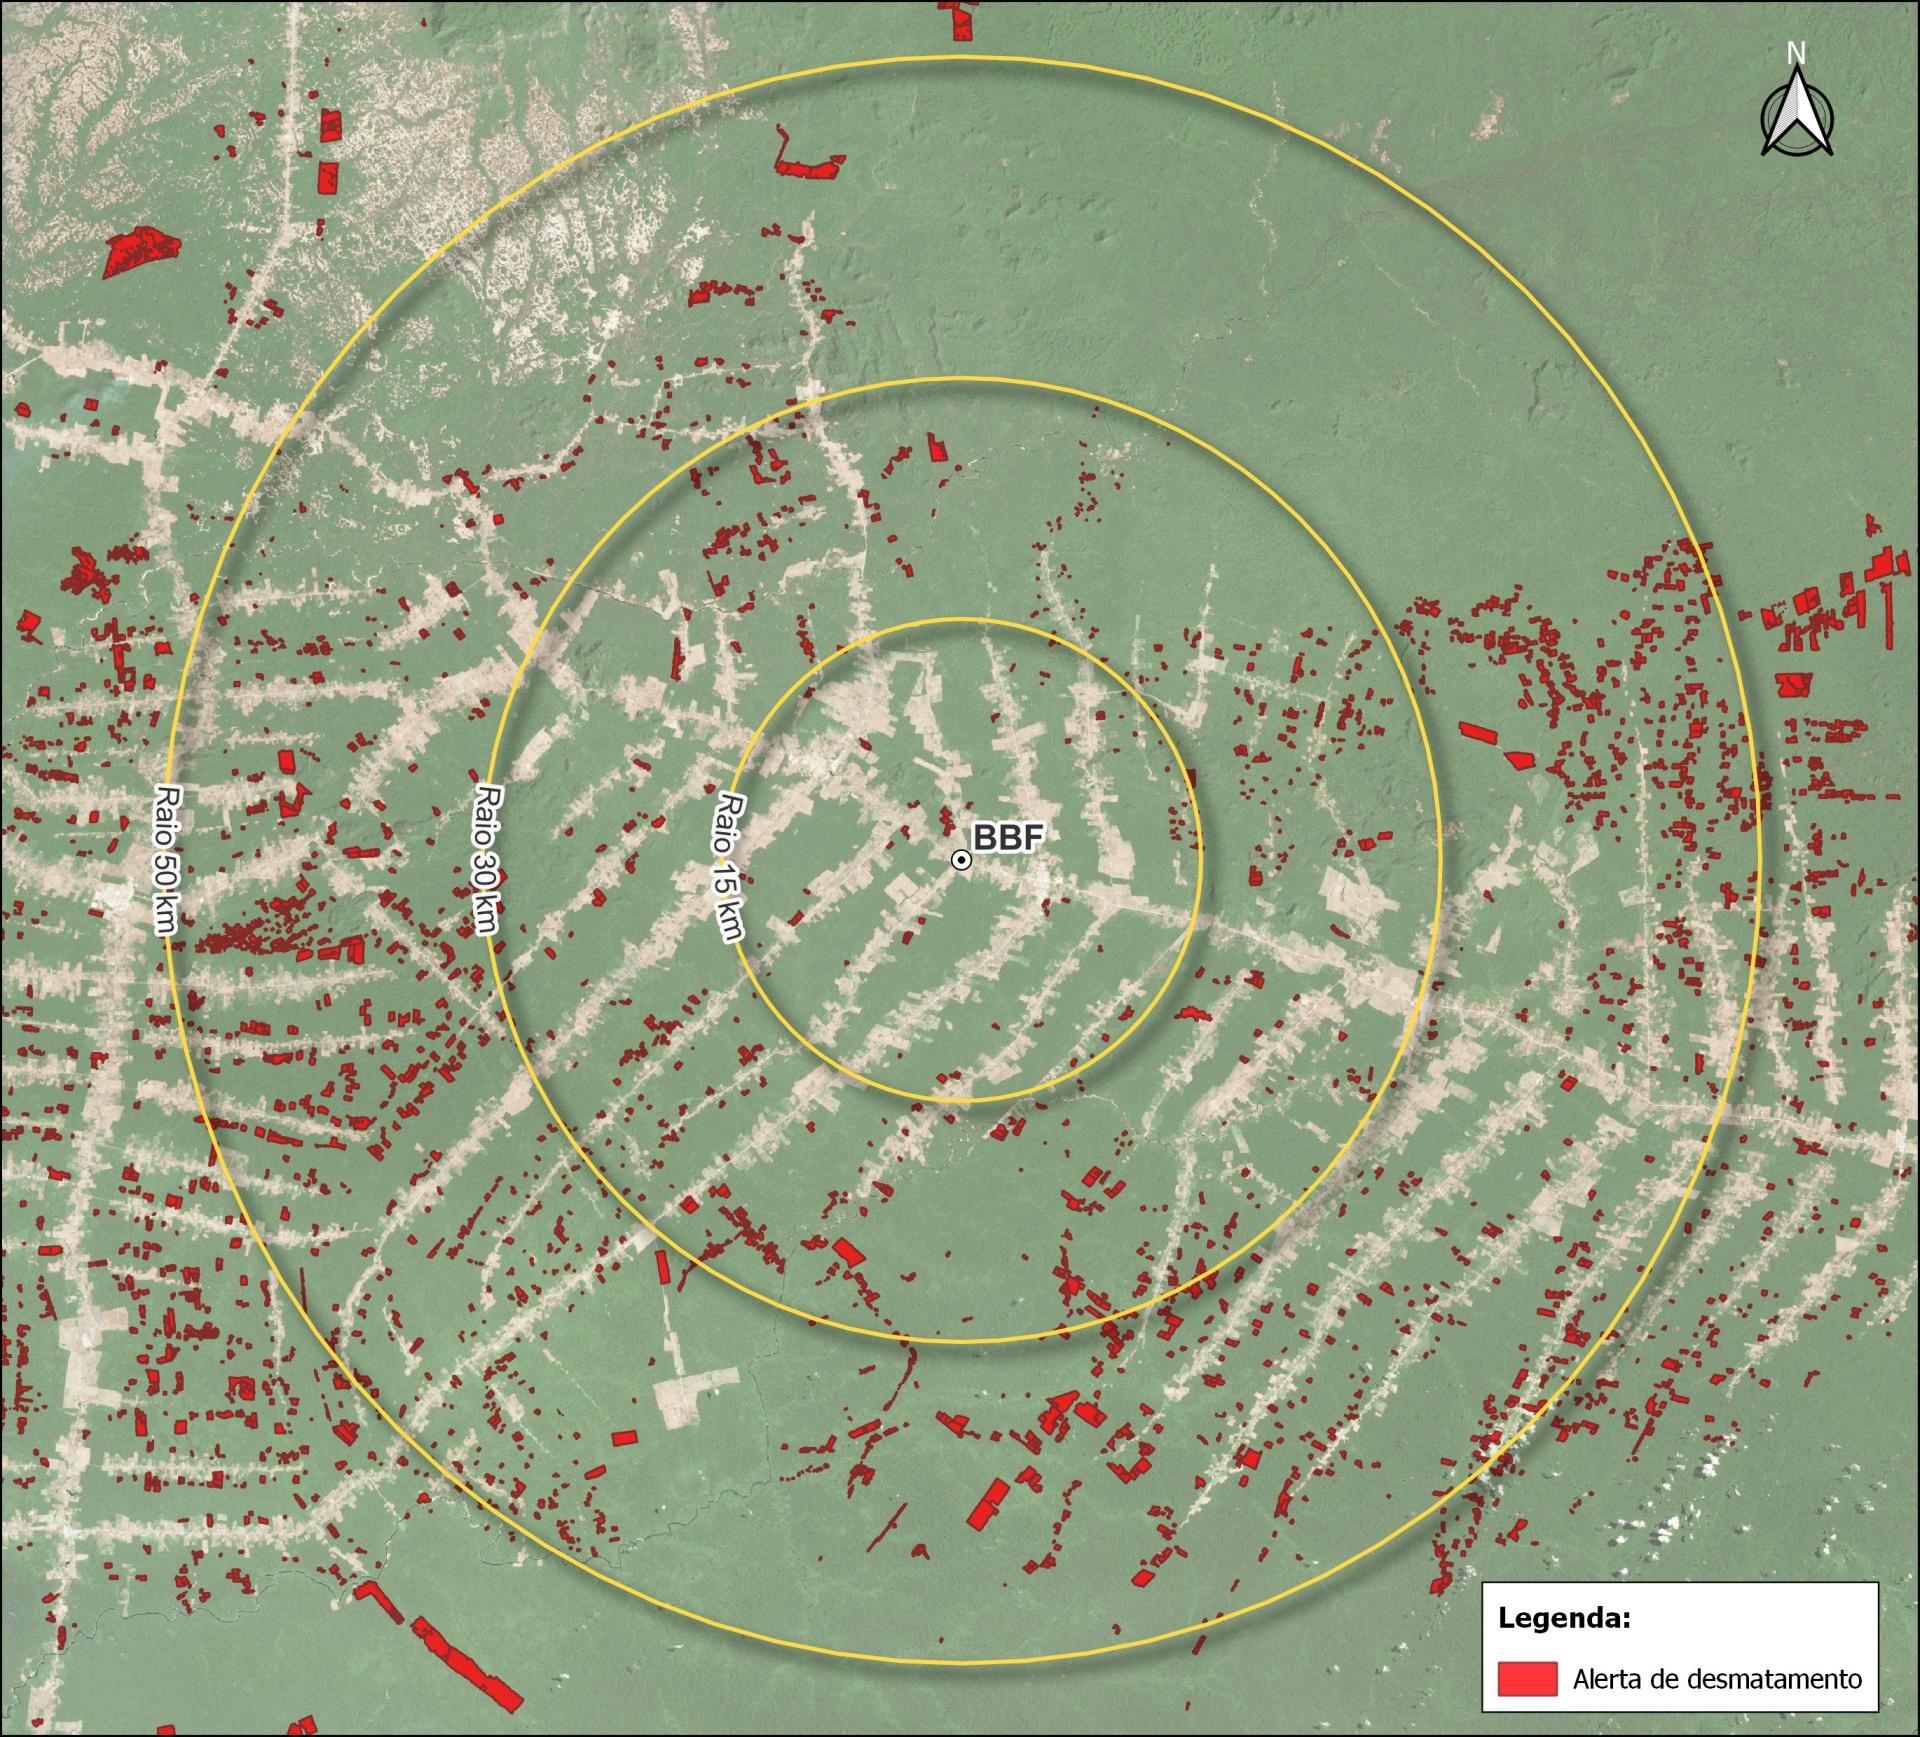 Áreas próximas às operações do Grupo BBF em Roraima possuem 85% menos alerta de desmatamento